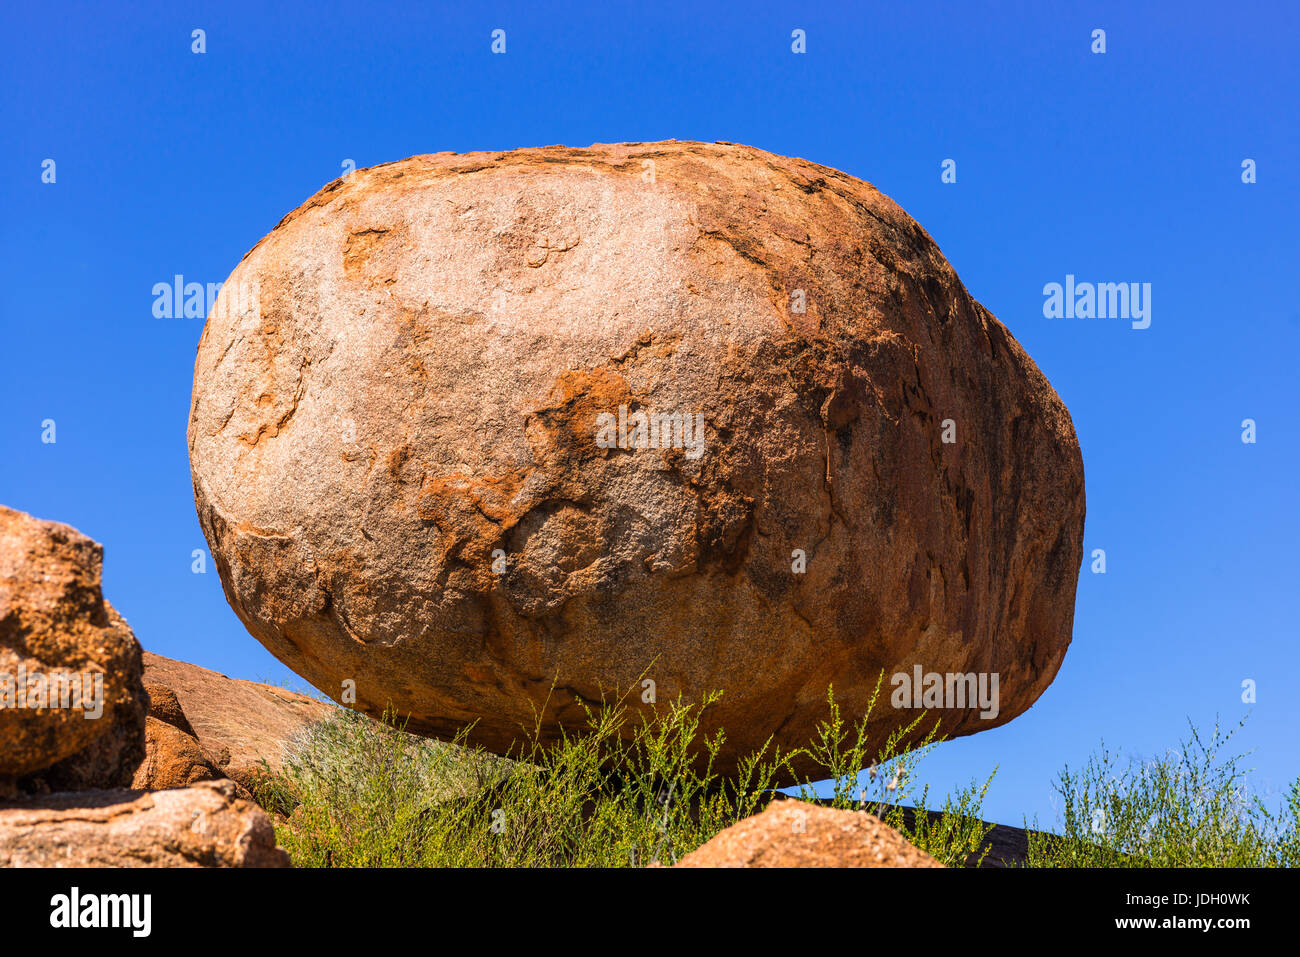 Devils Marbles - rocas de granito rojo están equilibrados en la roca, de Australia, el Territorio del Norte. Foto de stock